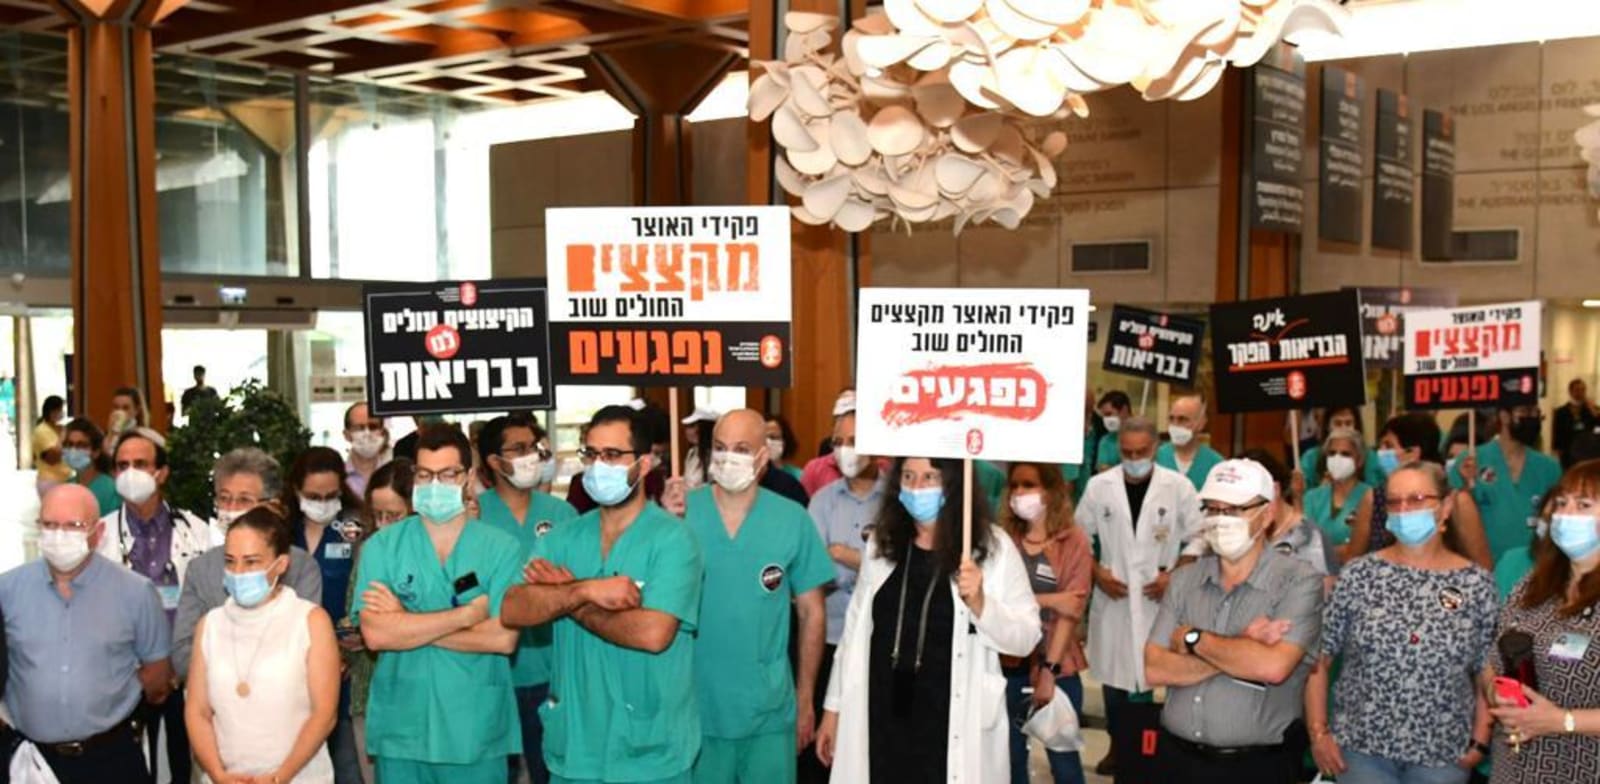 הפגנה בבית החולים תל השומר / צילום: הר"י